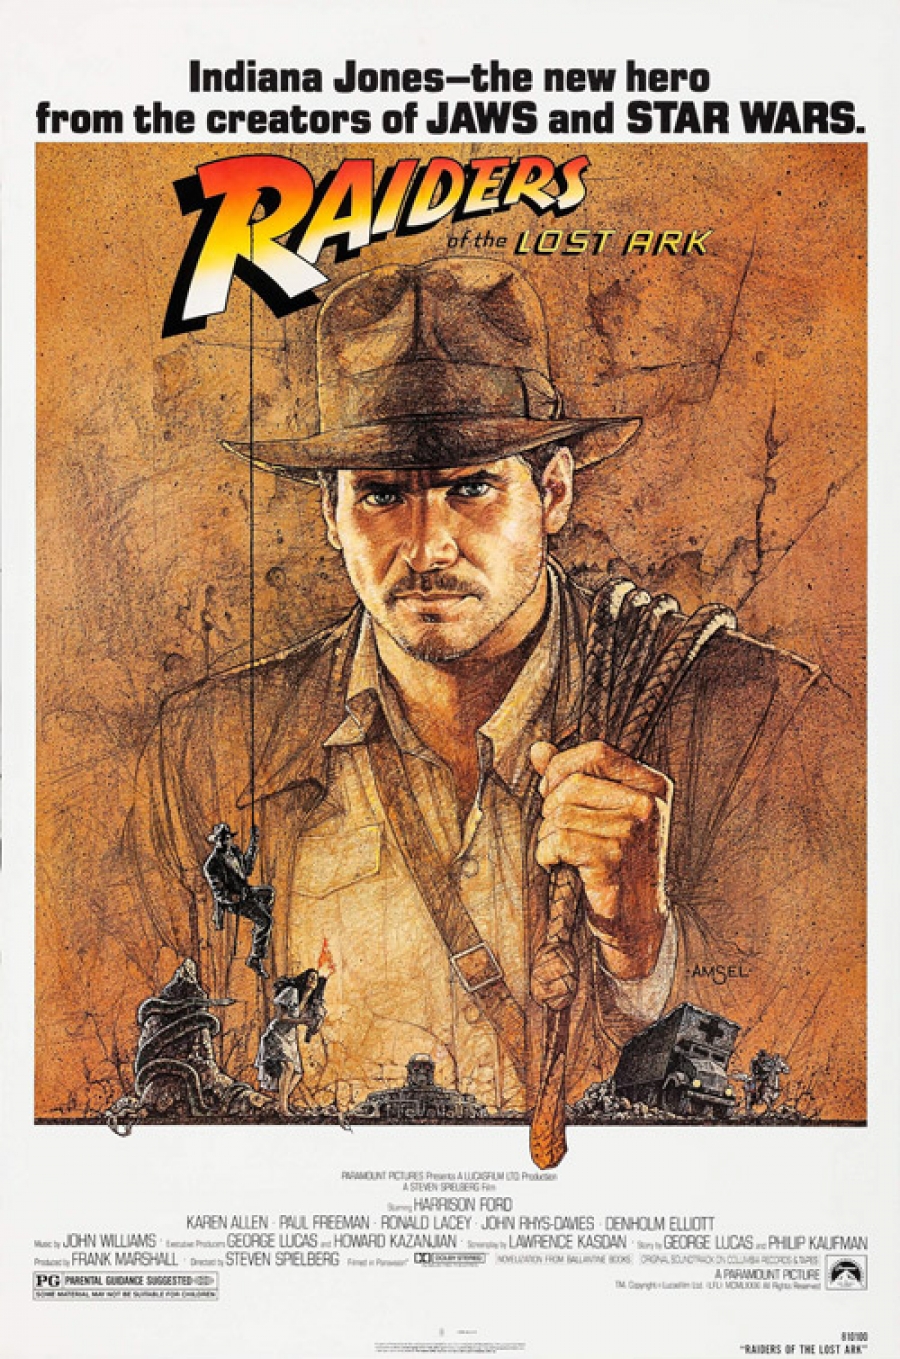 Karen Allen on the lasting legacy of 'Indiana Jones